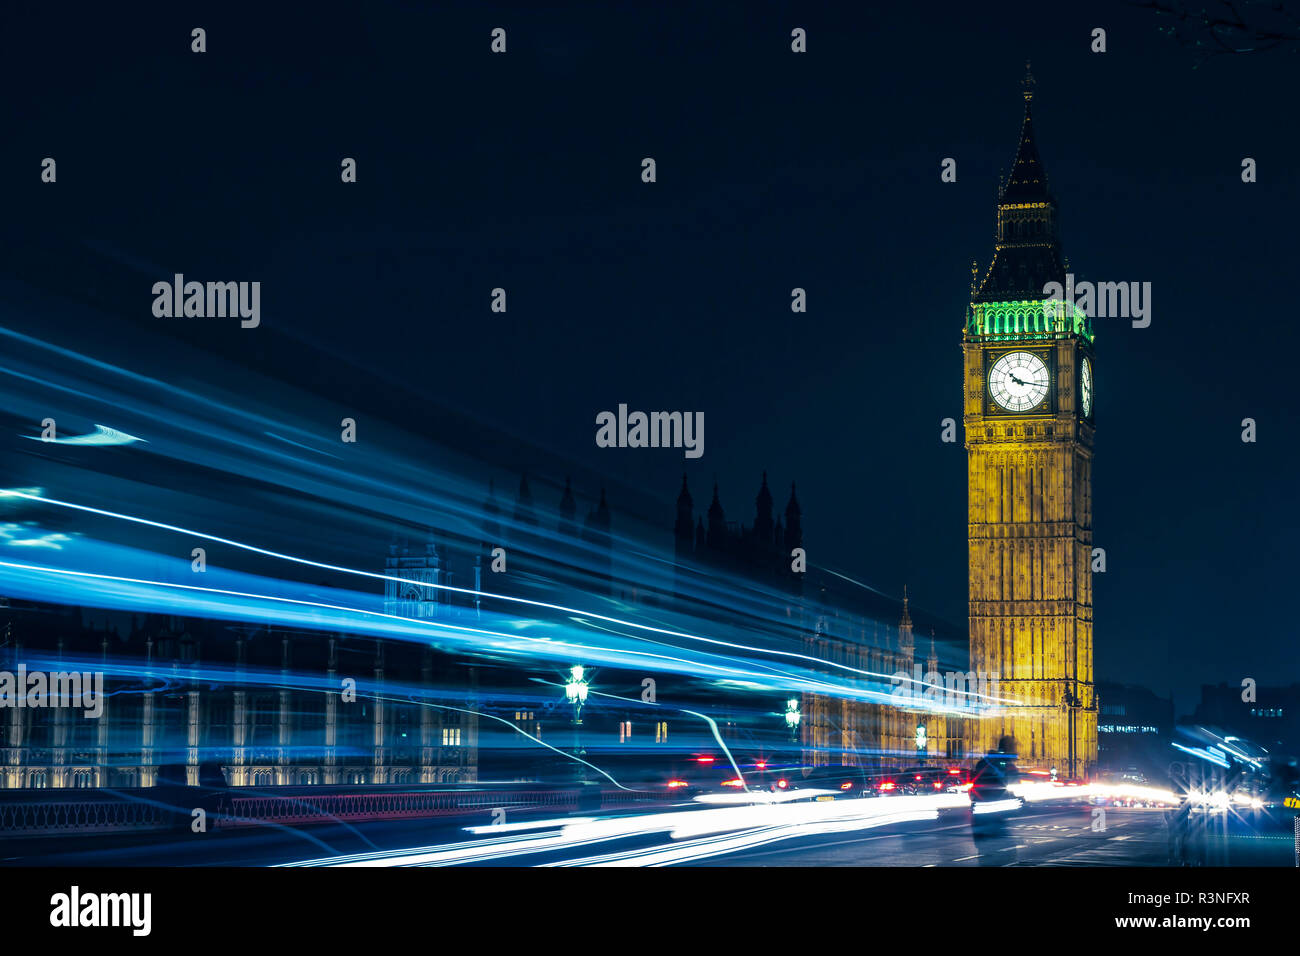 Die kultigen Britischen Elizabeth Tower mit Big Ben an der Oberseite und seine Uhr Gesicht, in der Nähe der Houses of Parliament in Westminster, London im Ger Stockfoto